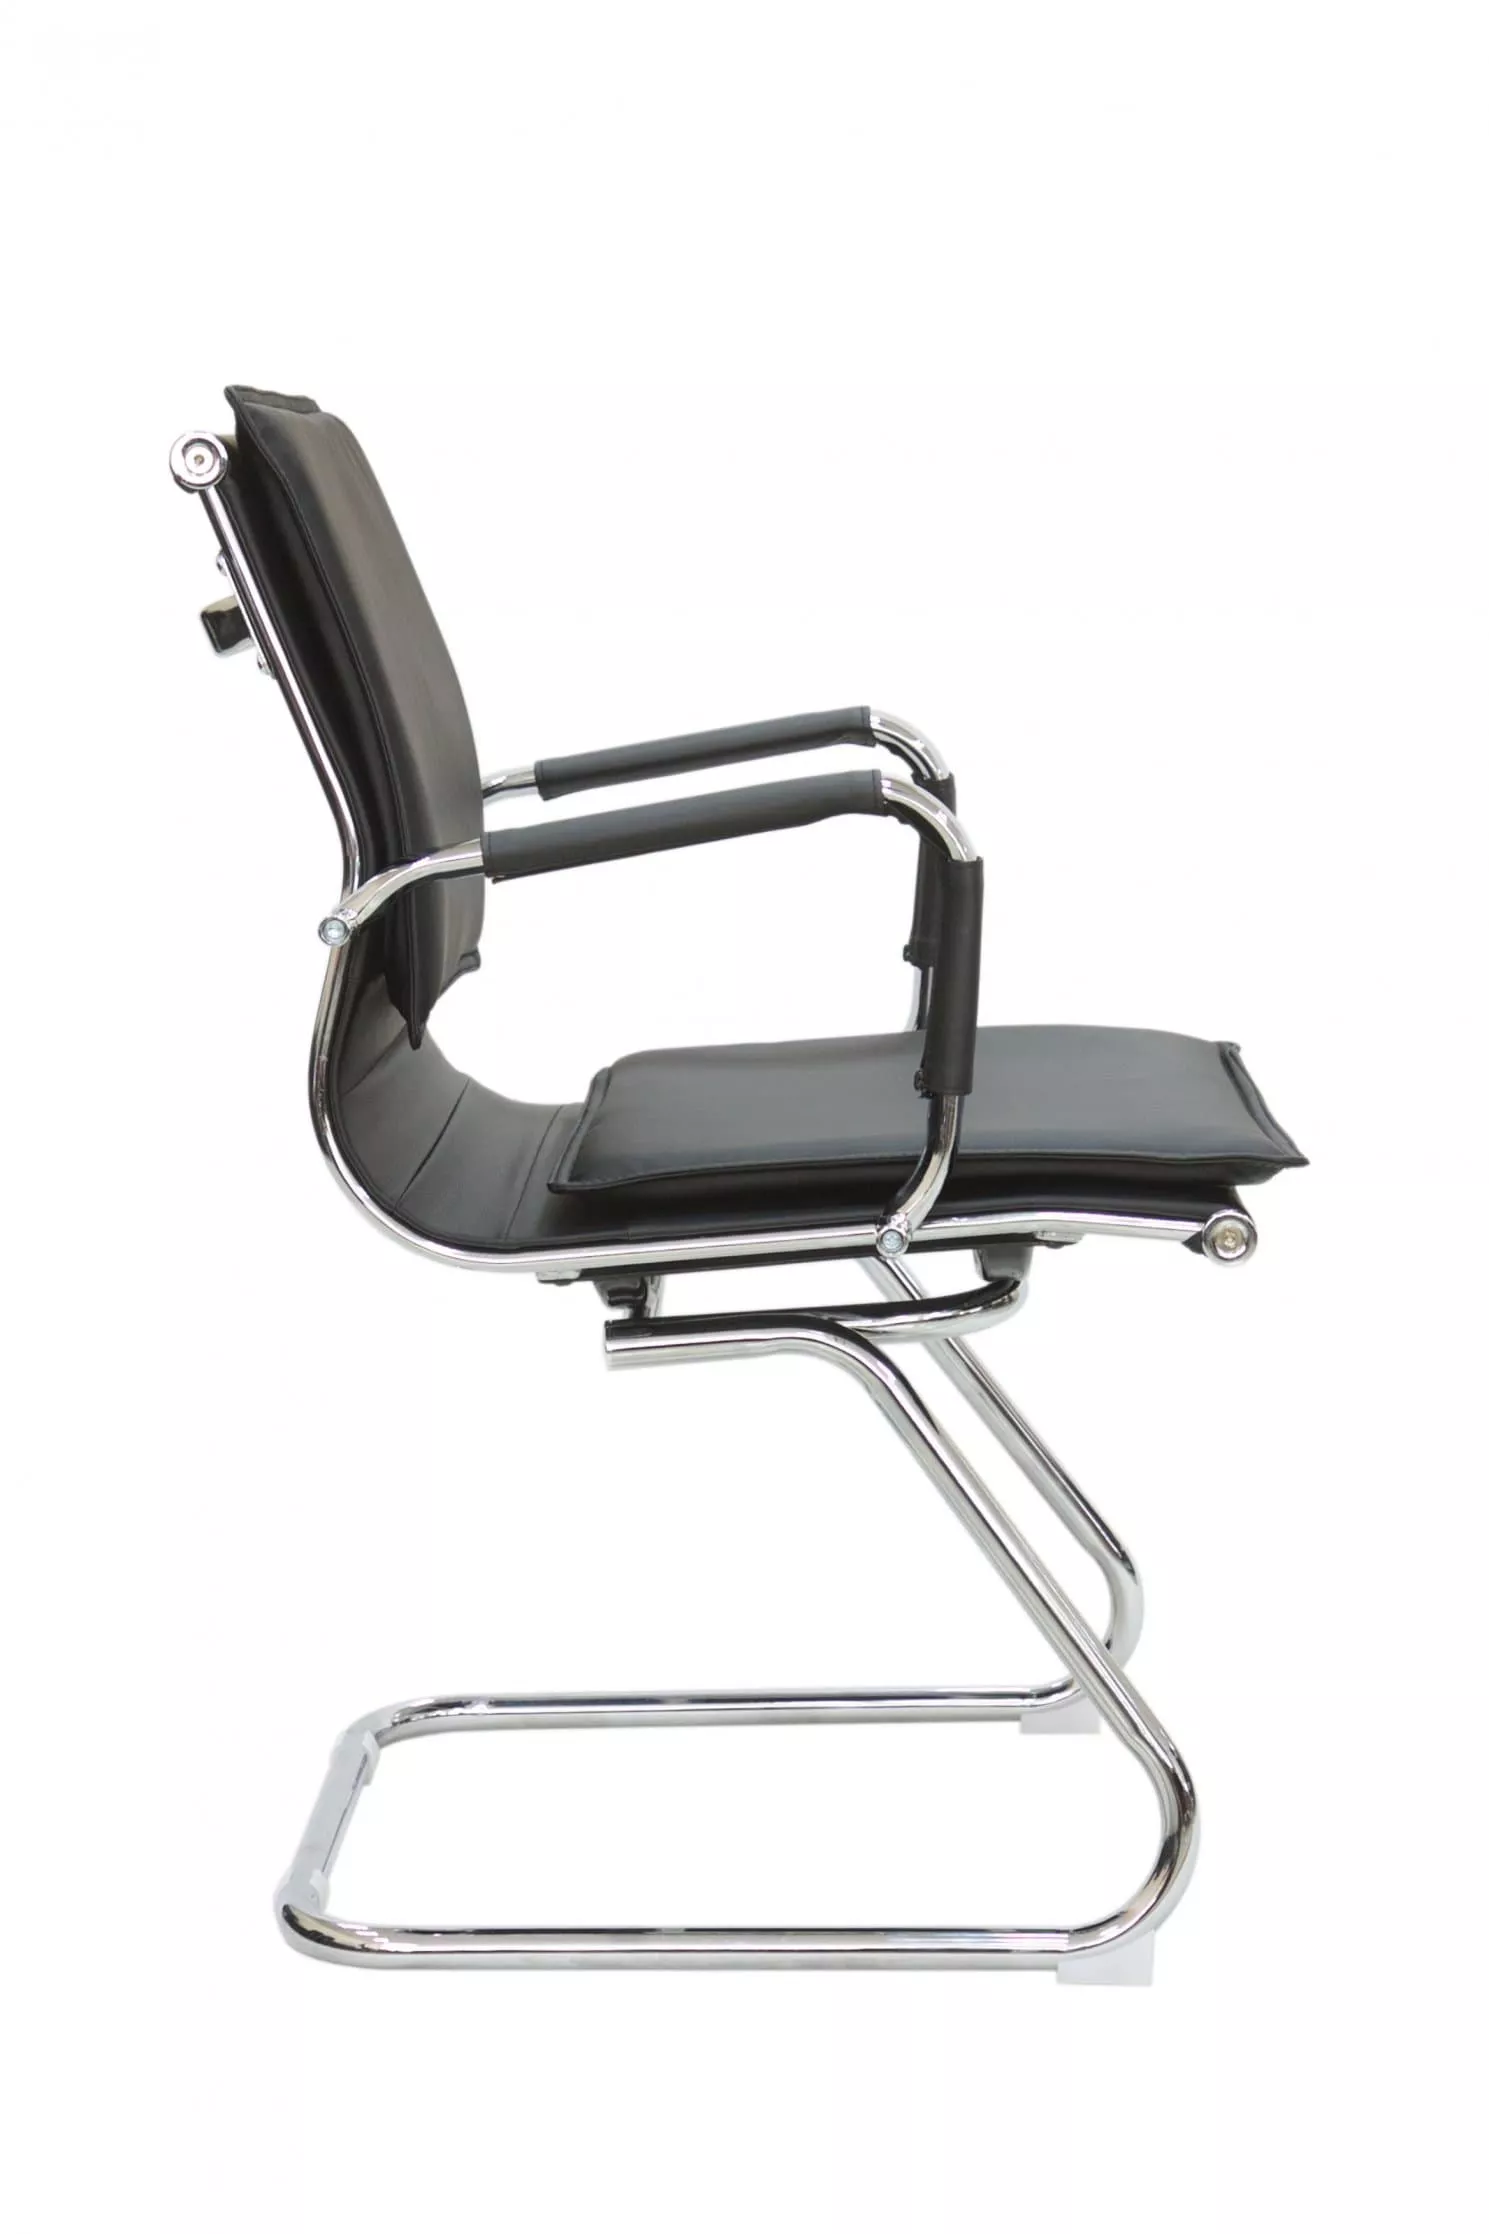 Конференц кресло Riva Chair Hugo 6003-3 черный